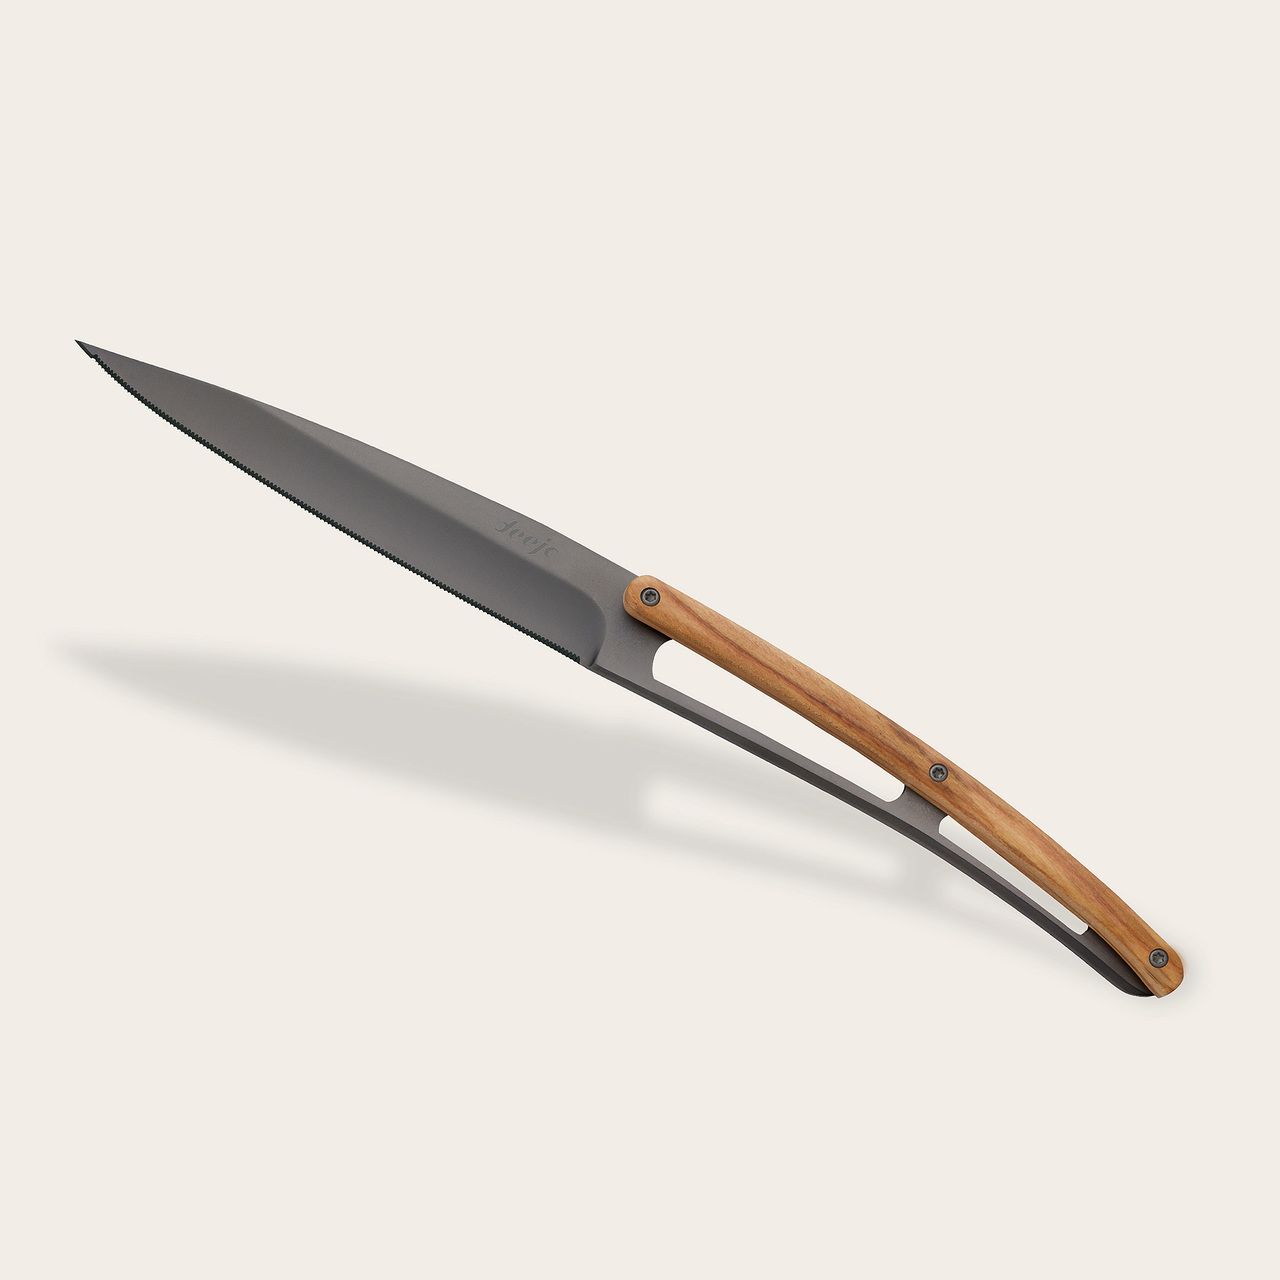 https://www.deejo.com/medias/produits/3083279292/22199_1280-6-deejo-steak-knives-serrated-olive-wood.jpg